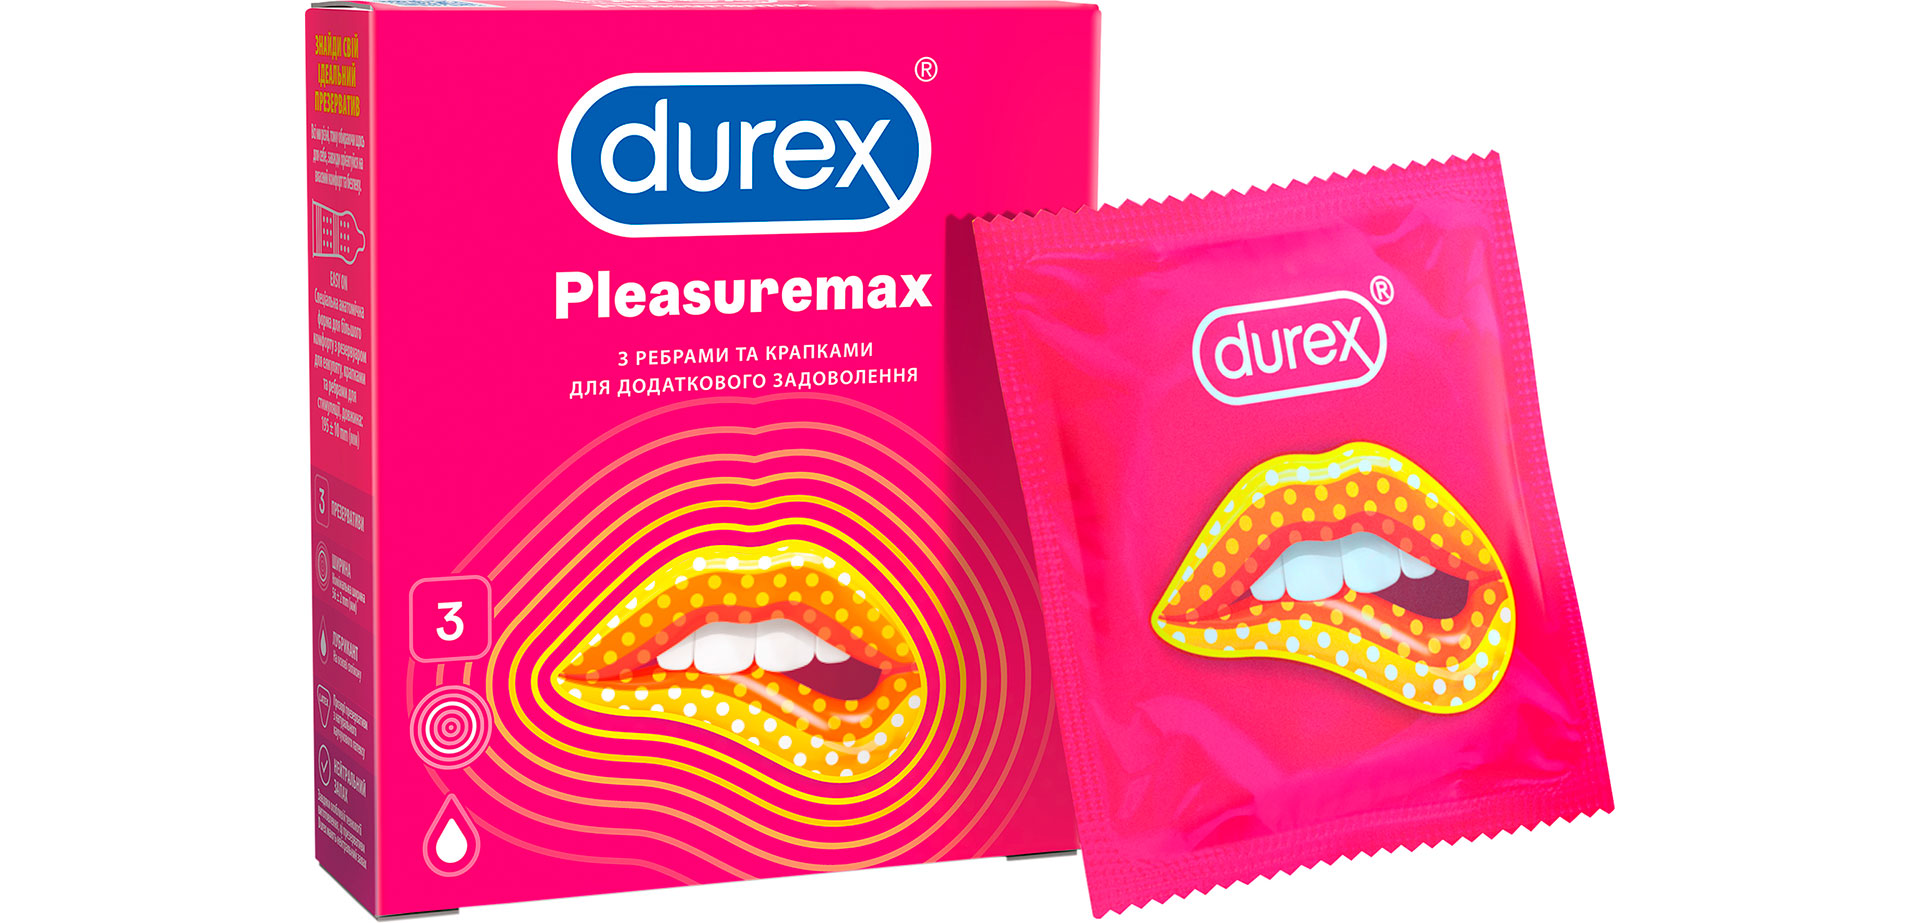 Ребристые презервативы с точками для усиления ощущений.